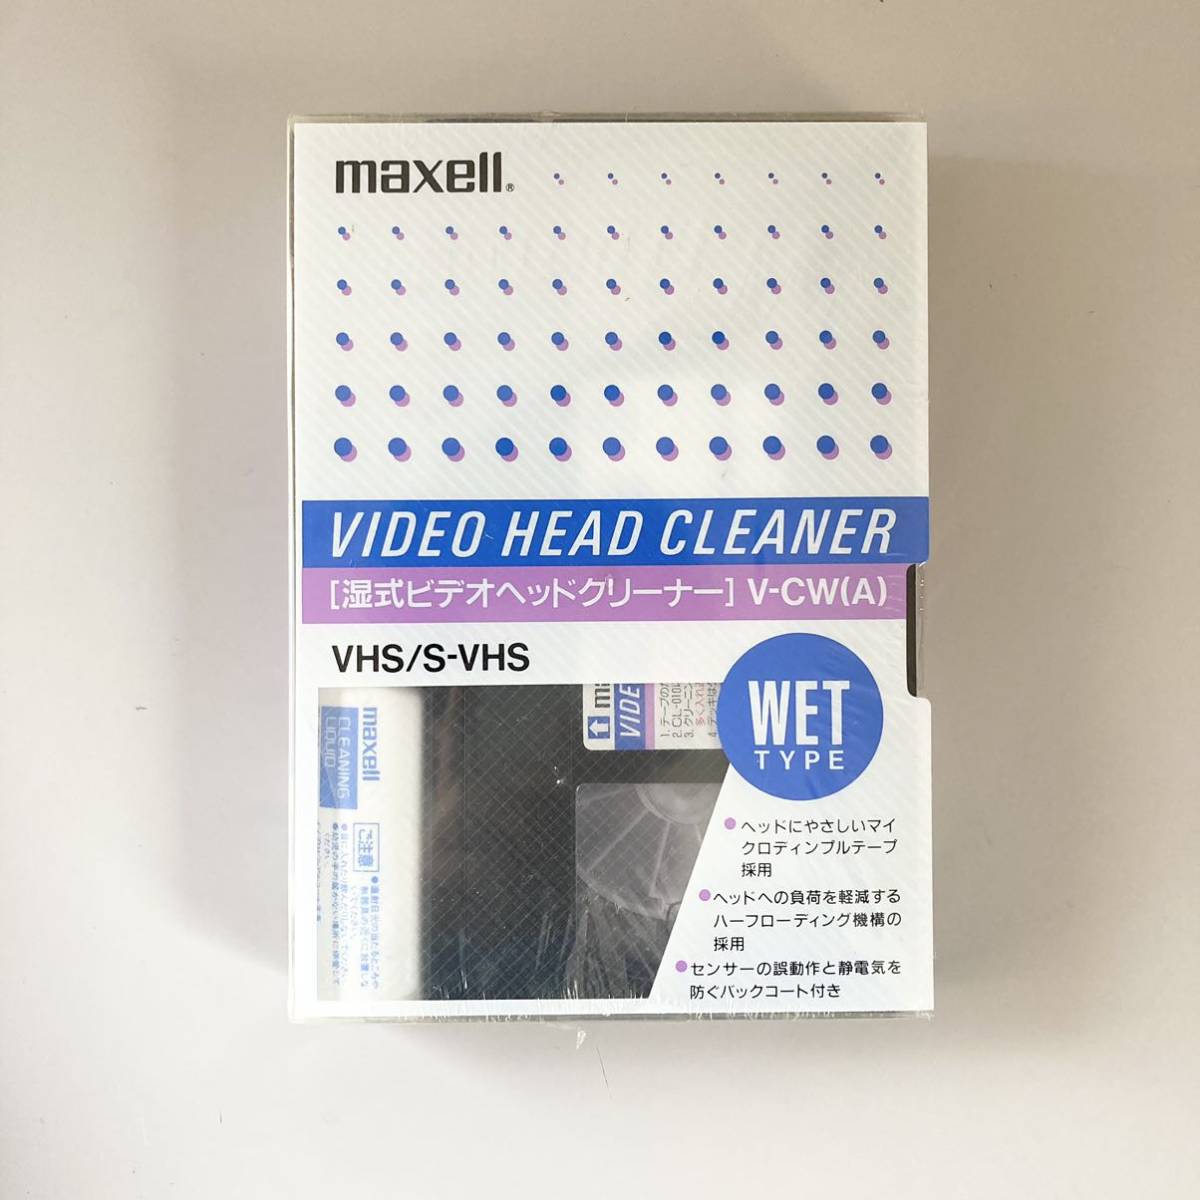 maxell マクセル S-VHS対応 VHS ビデオヘッドクリーナー湿式 V-CW(A)_画像1